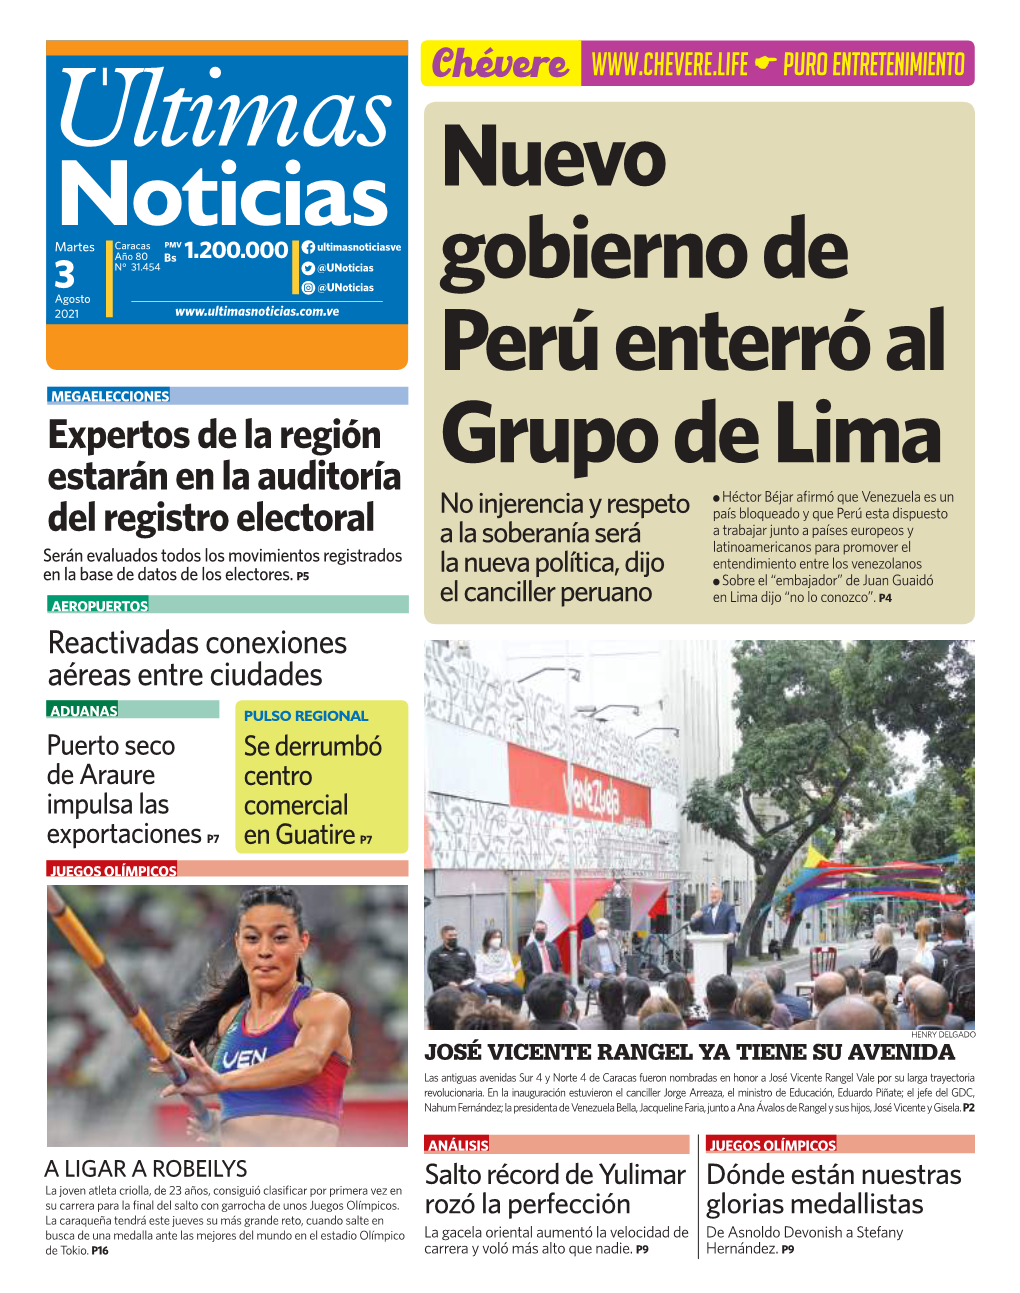 Nuevo Gobierno De Perú Enterró Al Grupo De Lima